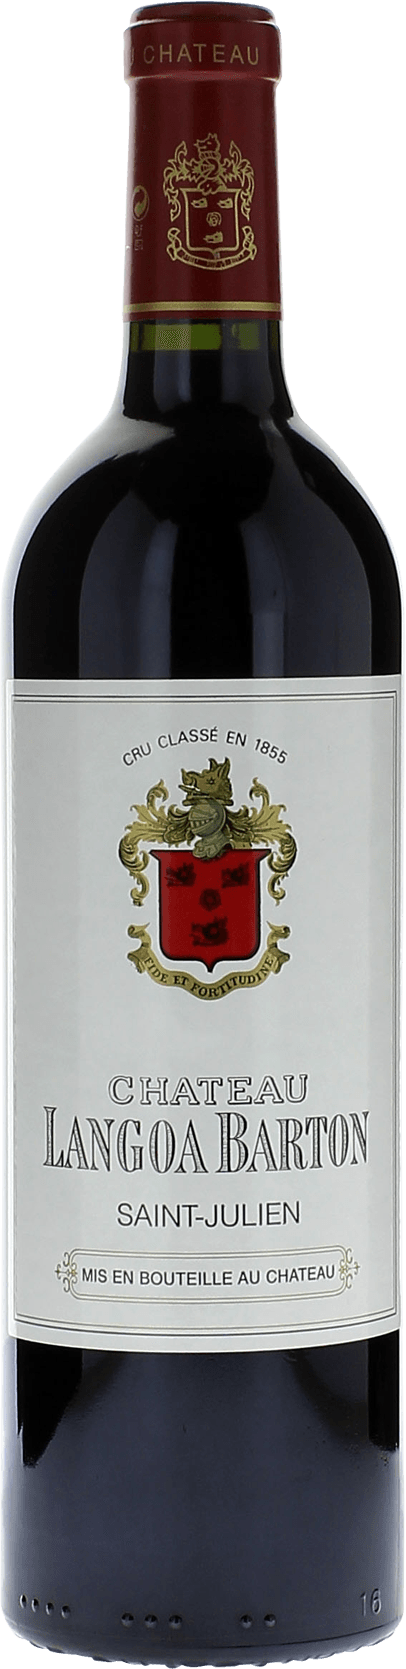 Langoa barton 2021 3me Grand cru class Saint-Julien, Bordeaux rouge